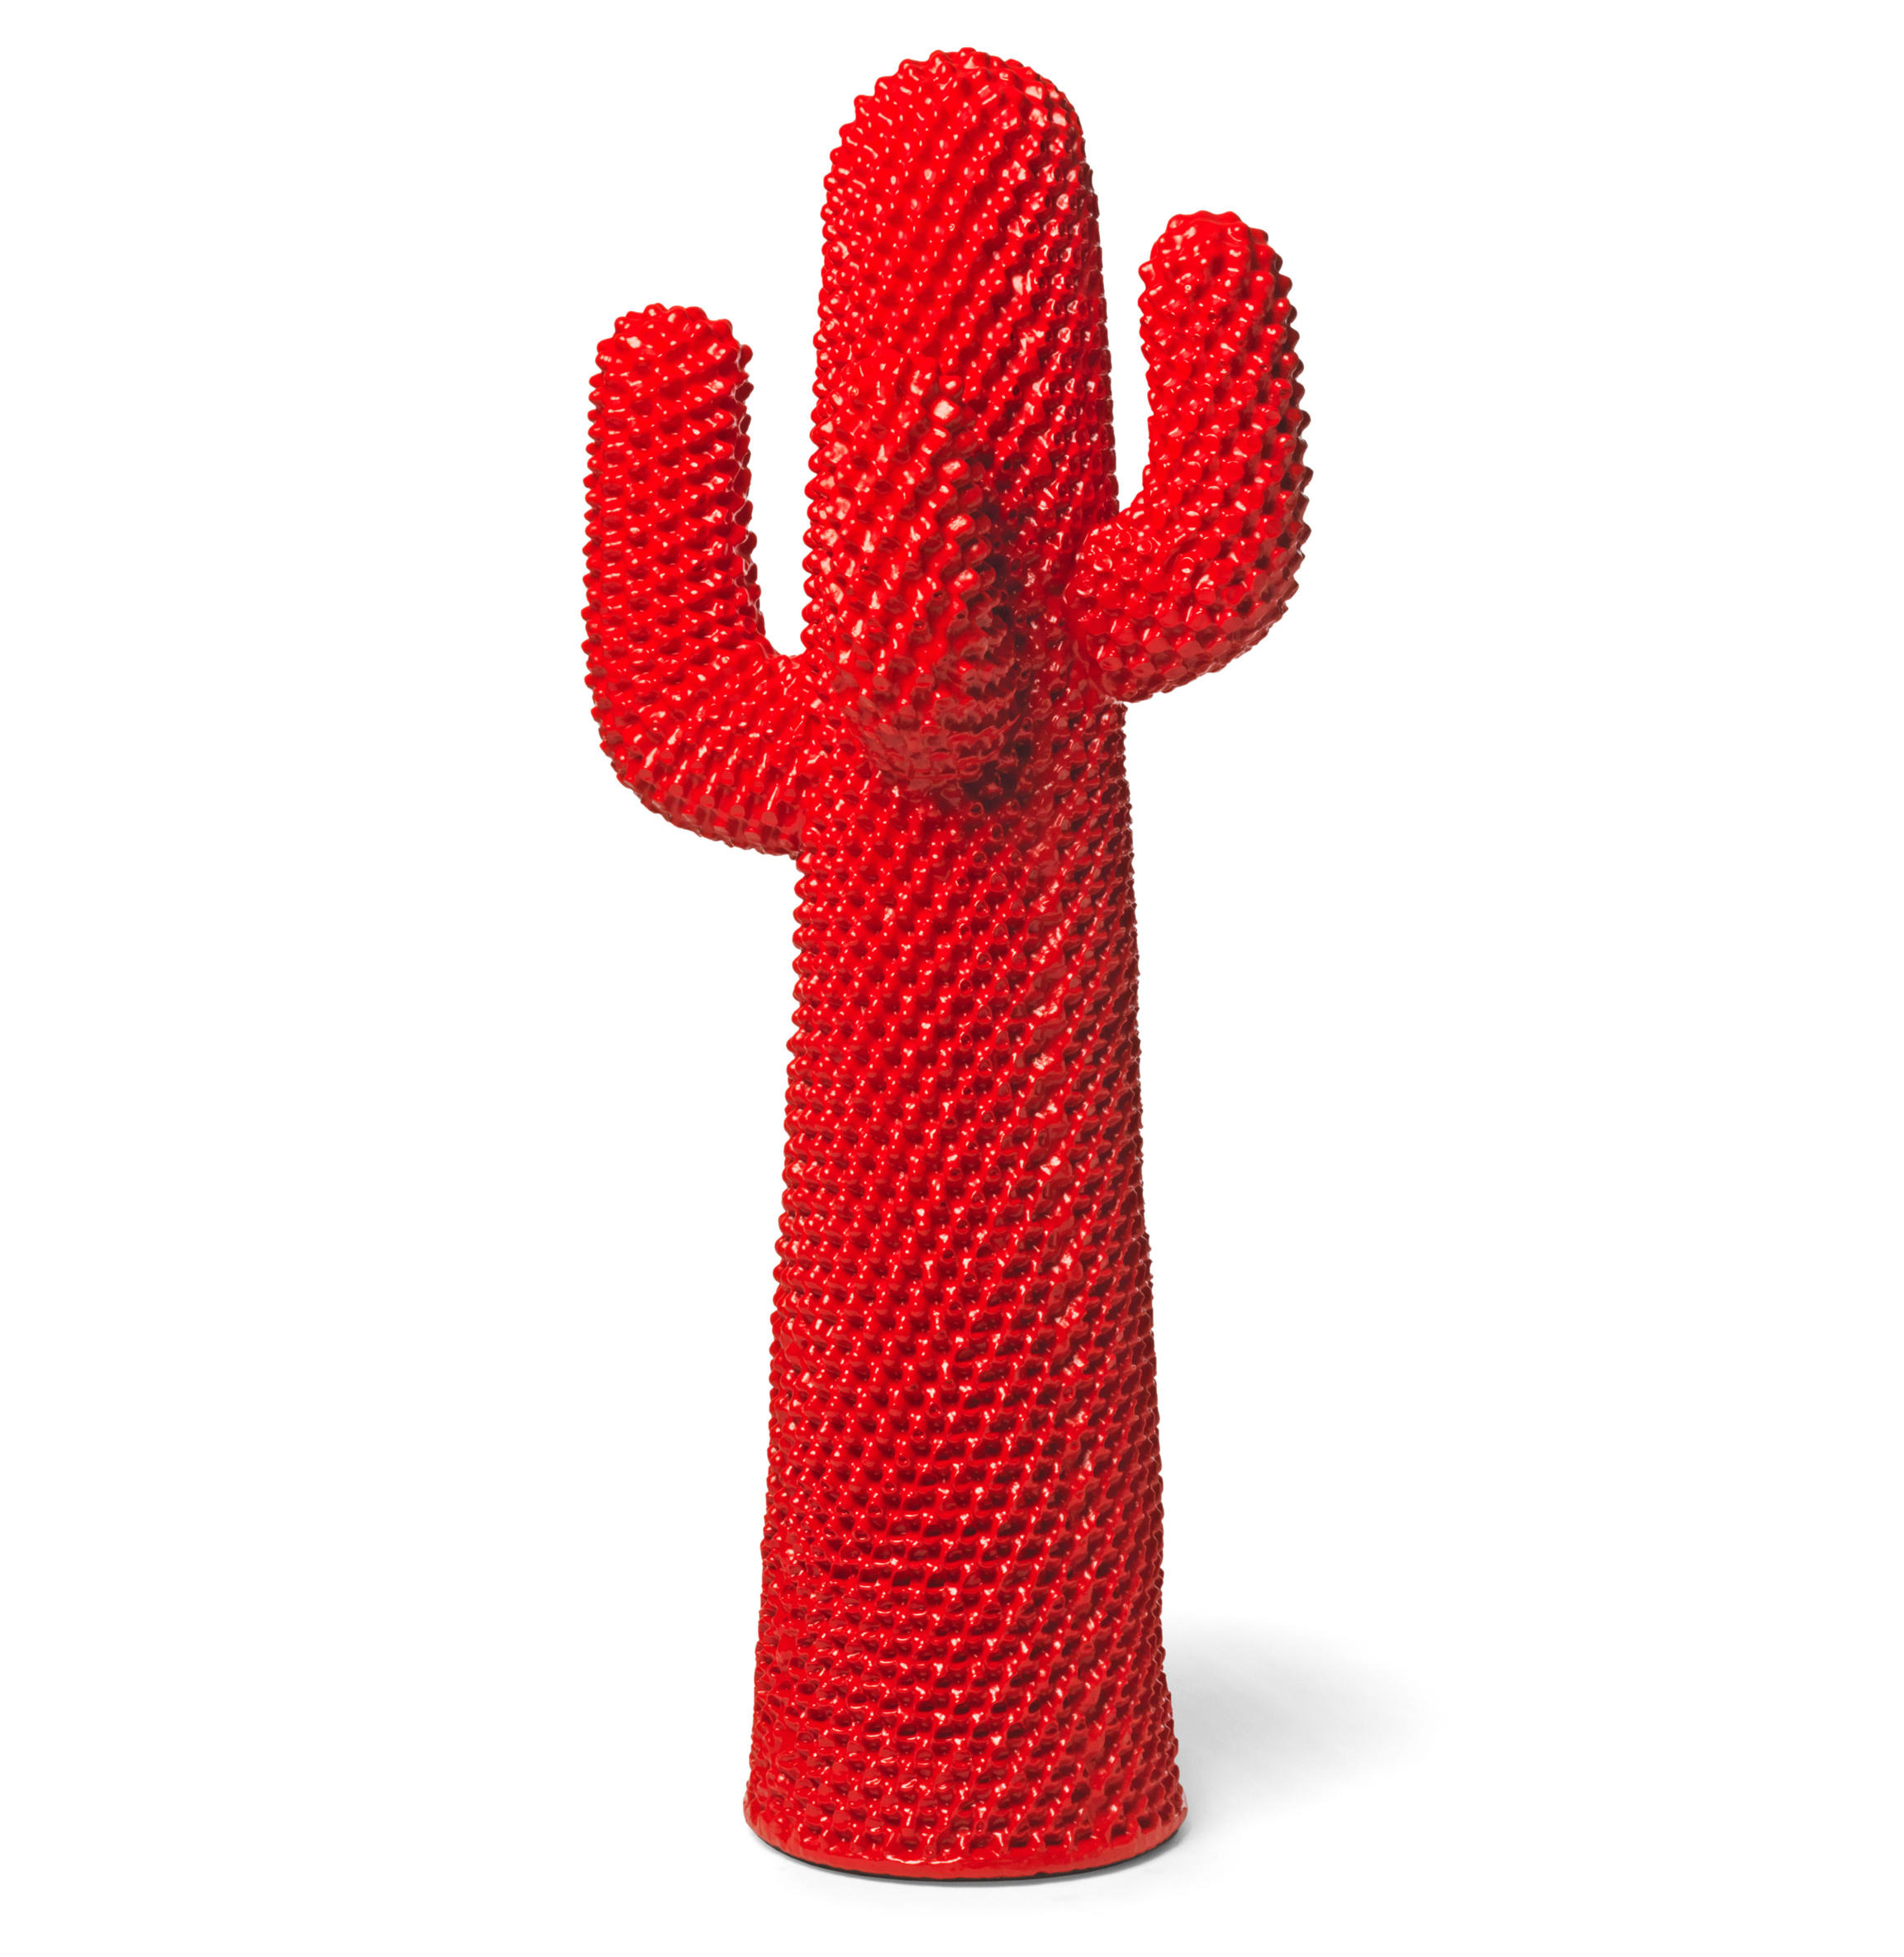 Cactus GÉANT ROUGE ROSSOCACTUS 170cm - Objet déco ou porte-manteau original